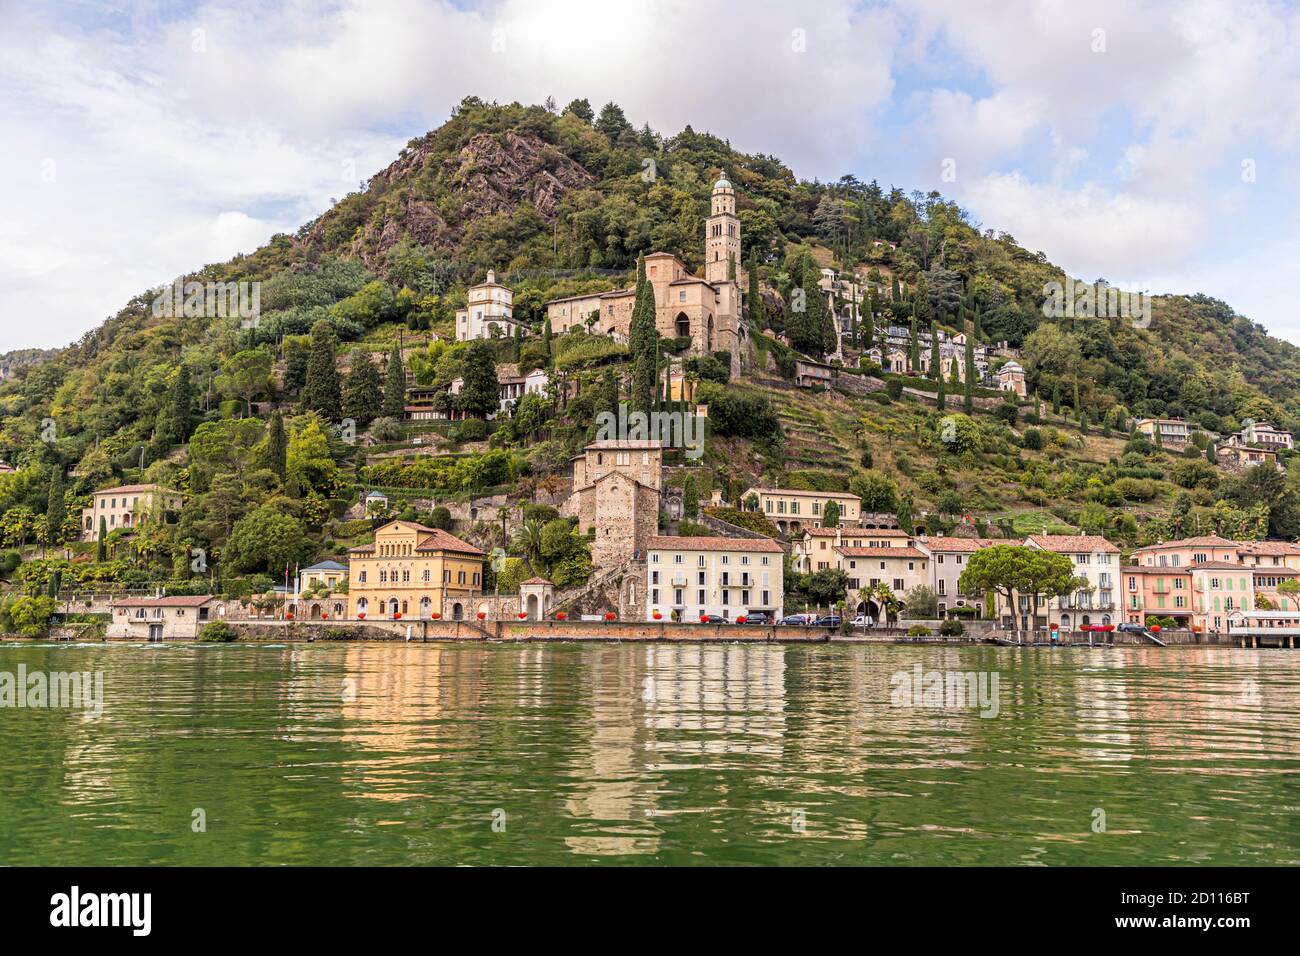 Visite culinaire sur le lac de Lugano au Tessin, Circolo di Carona, Suisse.Vue de l'eau: L'église de Santa Maria del Sasso de Morcote, avec la vieille ville historique ci-dessous.De nombreux petits restaurants bordent la promenade du front de mer Banque D'Images